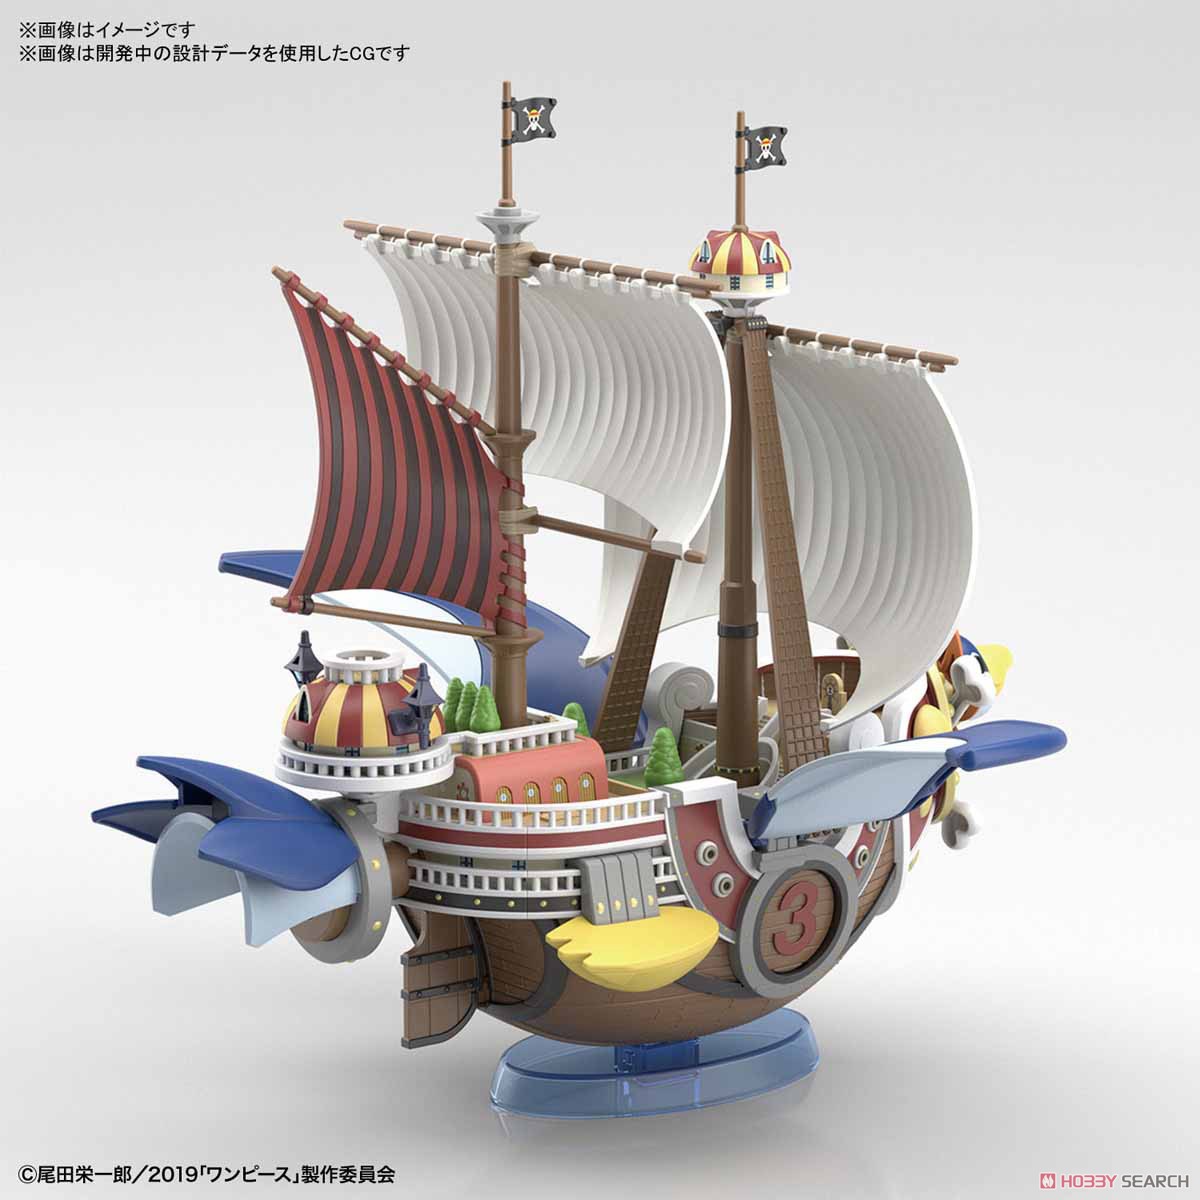 偉大なる船コレクション『サウザンド・サニー号 フライングモデル』ワンピース プラモデル-007